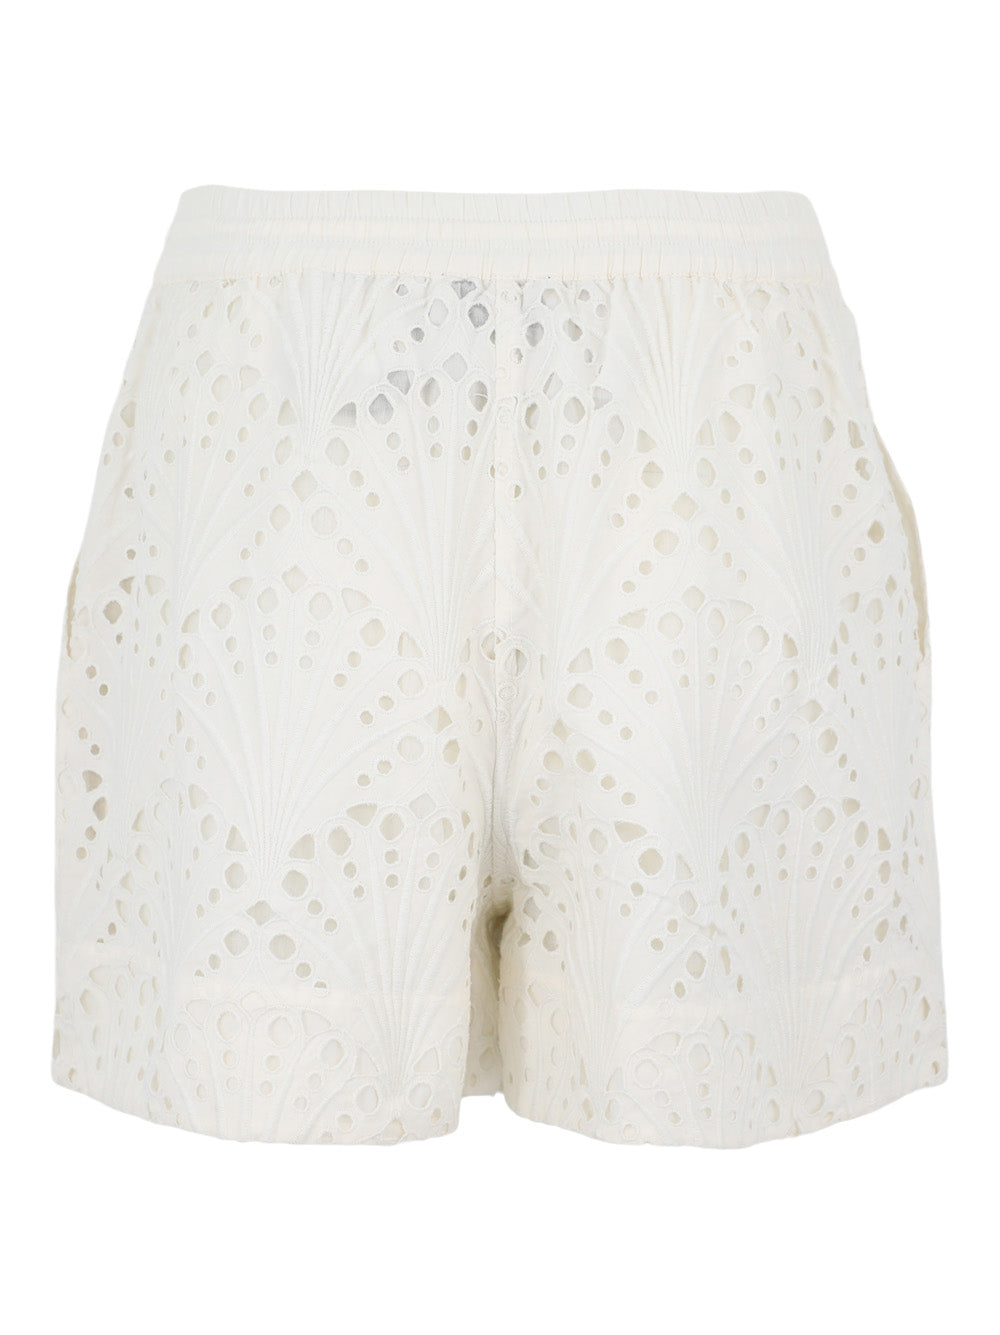 Essentiel Antwerp Femano Shorts in Off-White